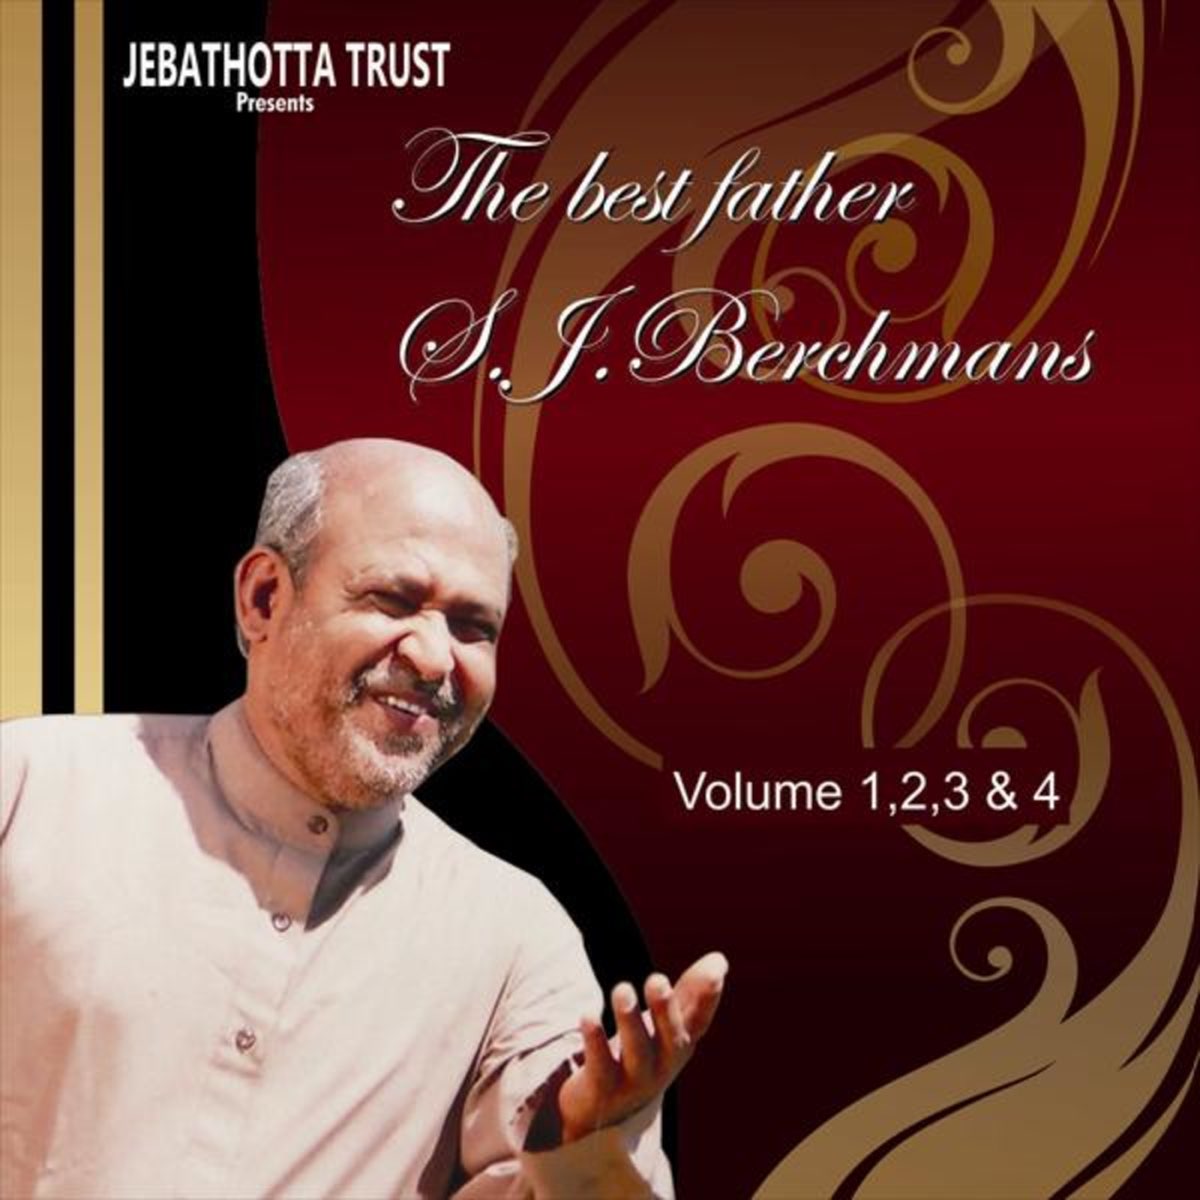 The Best of Fr. S. J. Berchmans, Vol. 1, 2, 3 & 4 (Jebathotta  Jeyageethangal Songs) by Fr S J Berchmans on Apple Music